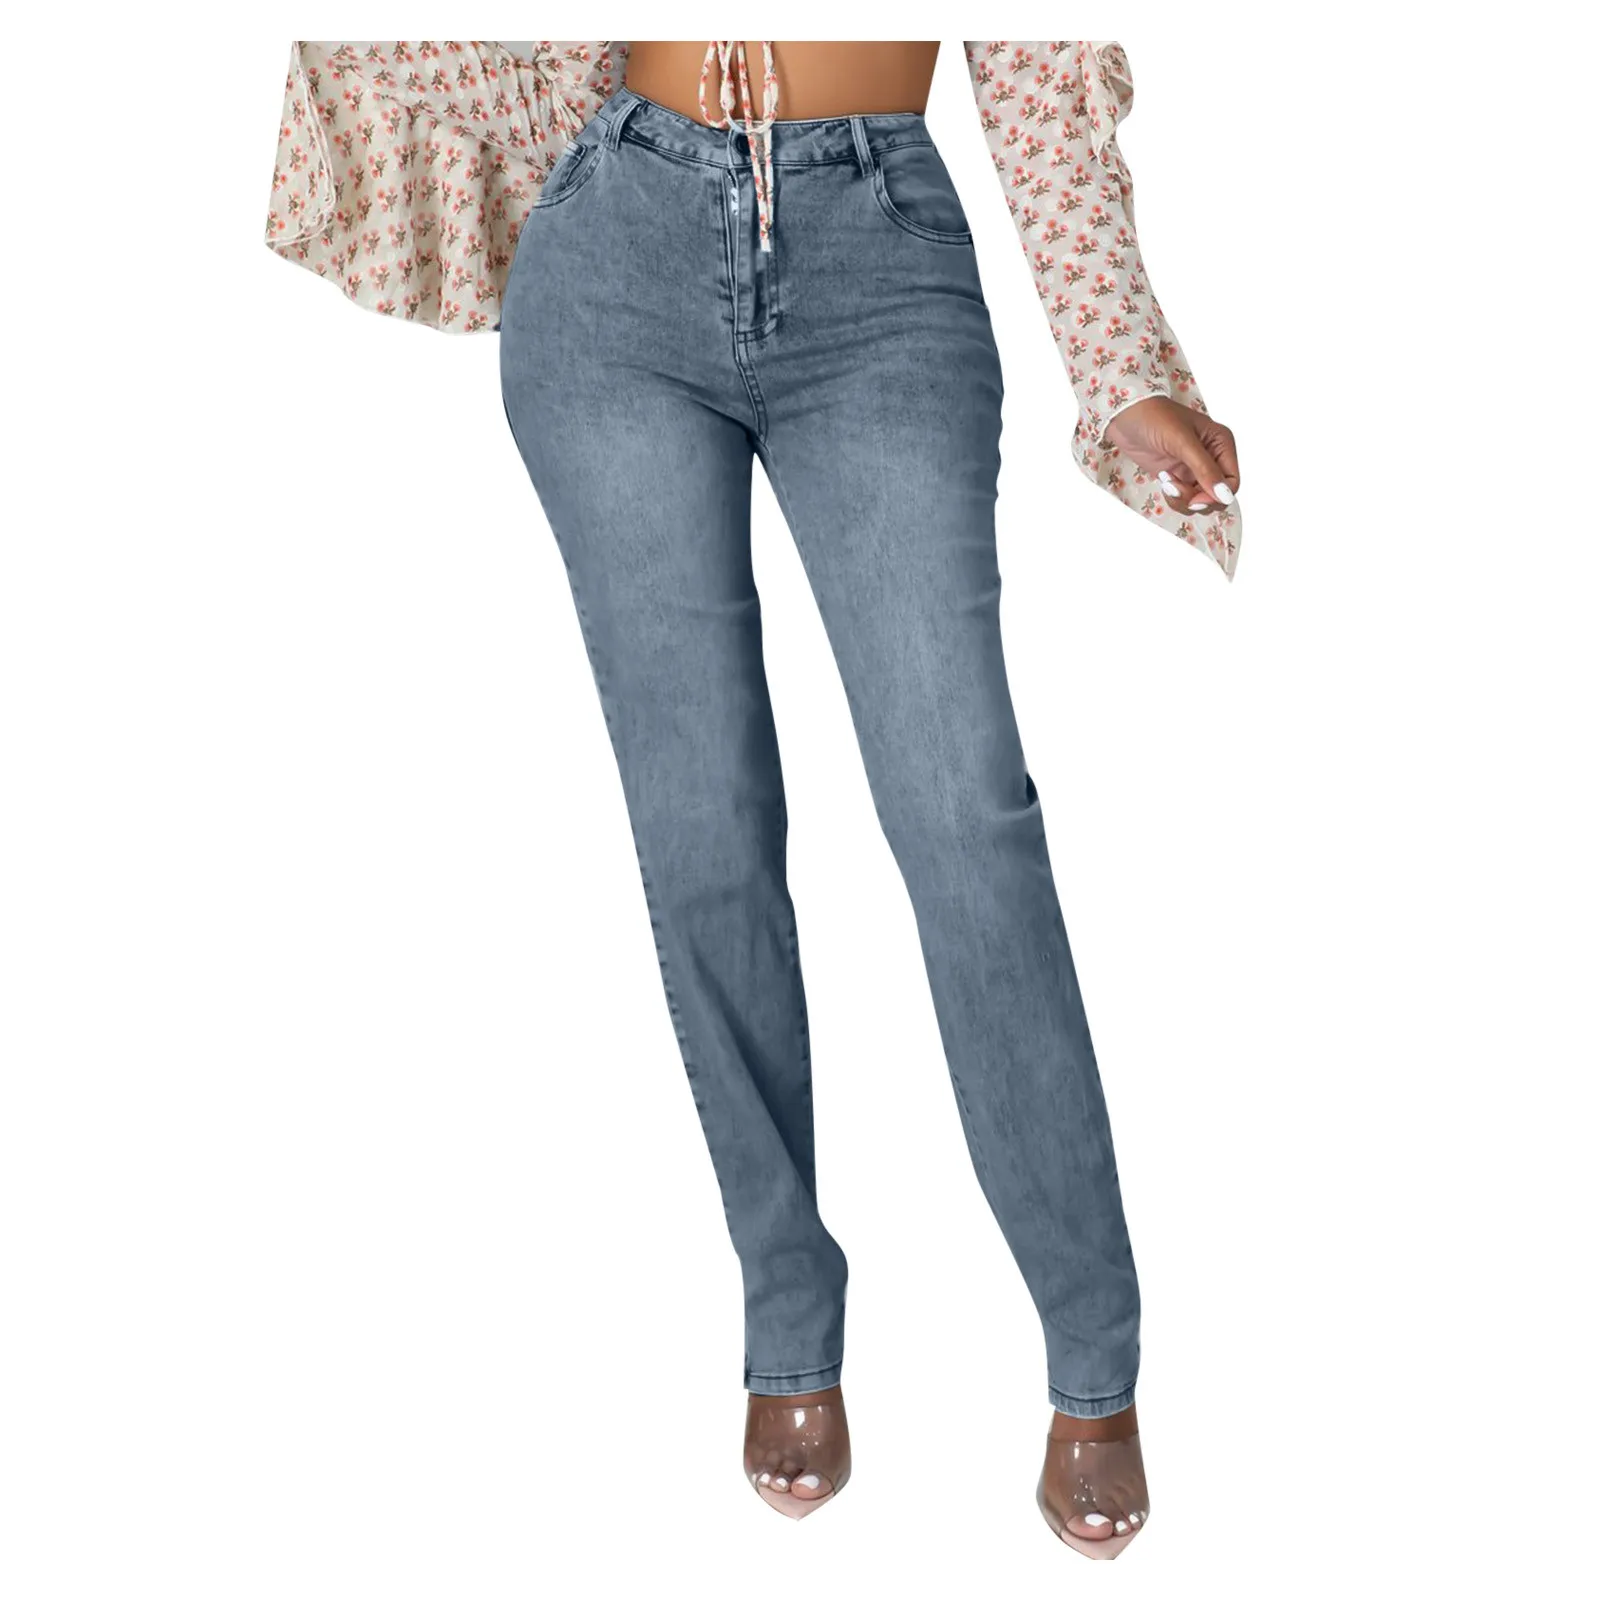 Женские узкие джинсы с рельефным переходом цвета длинные градиентом обычные